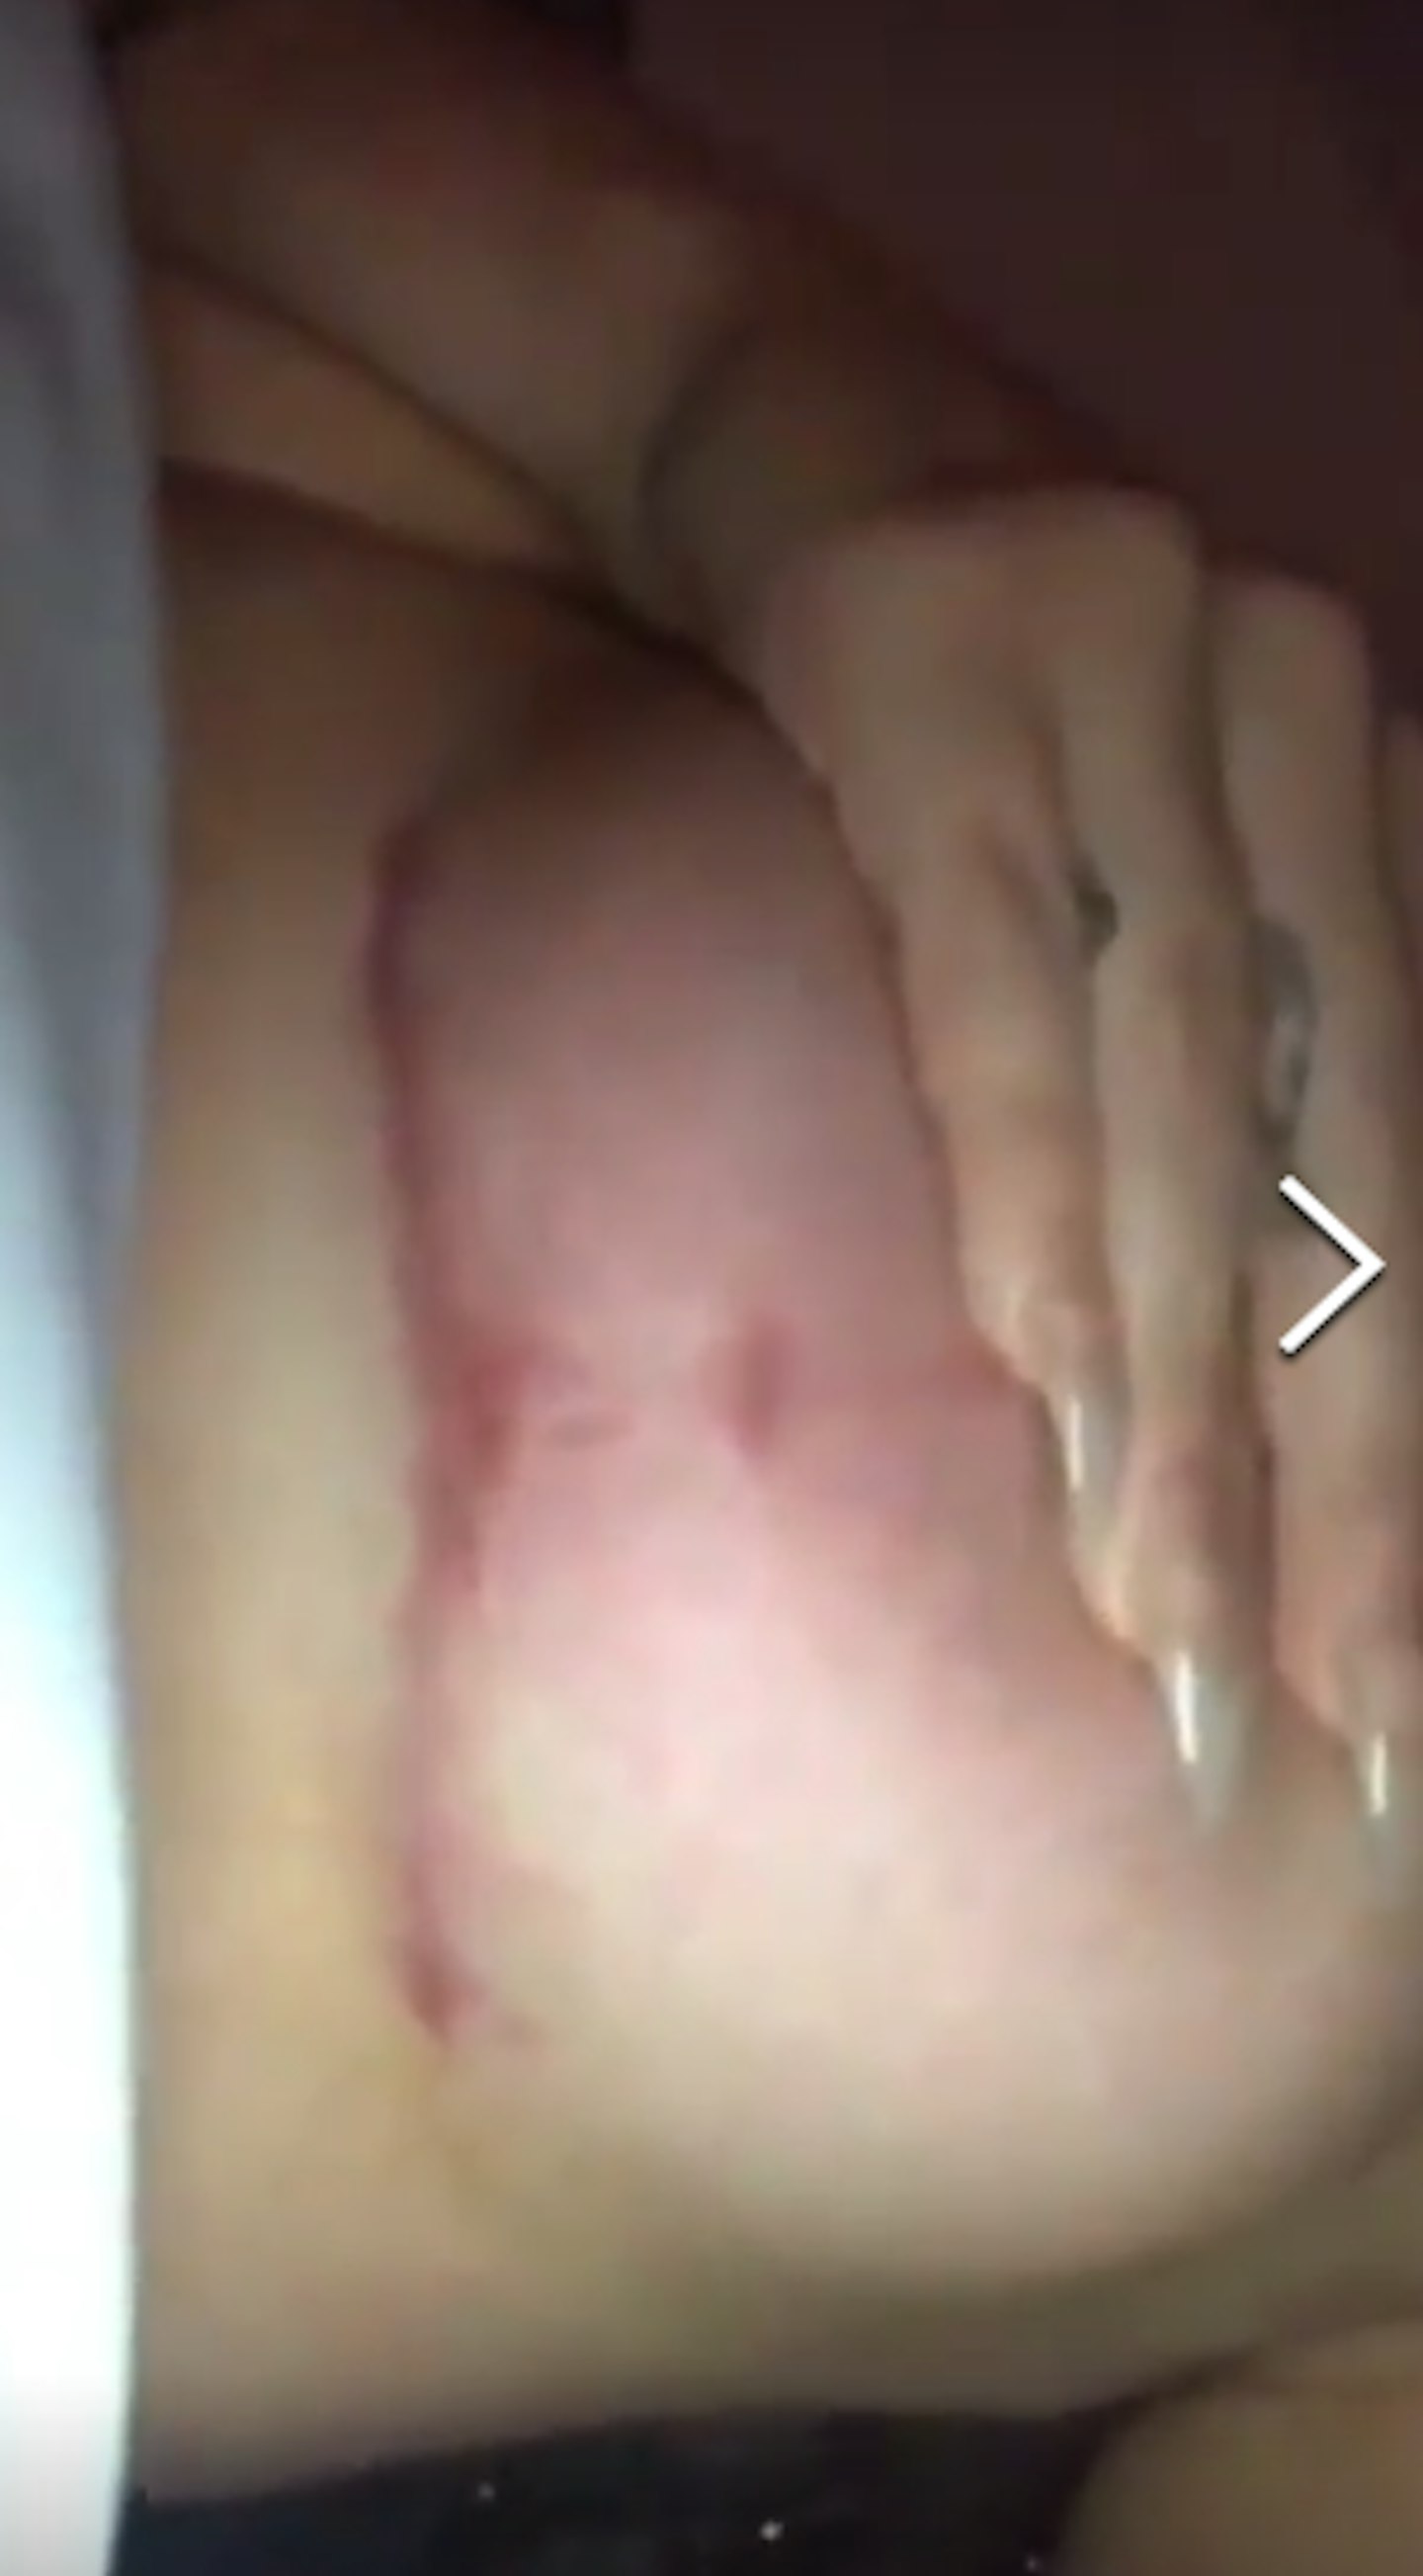 Chloe Ferry boob job scar